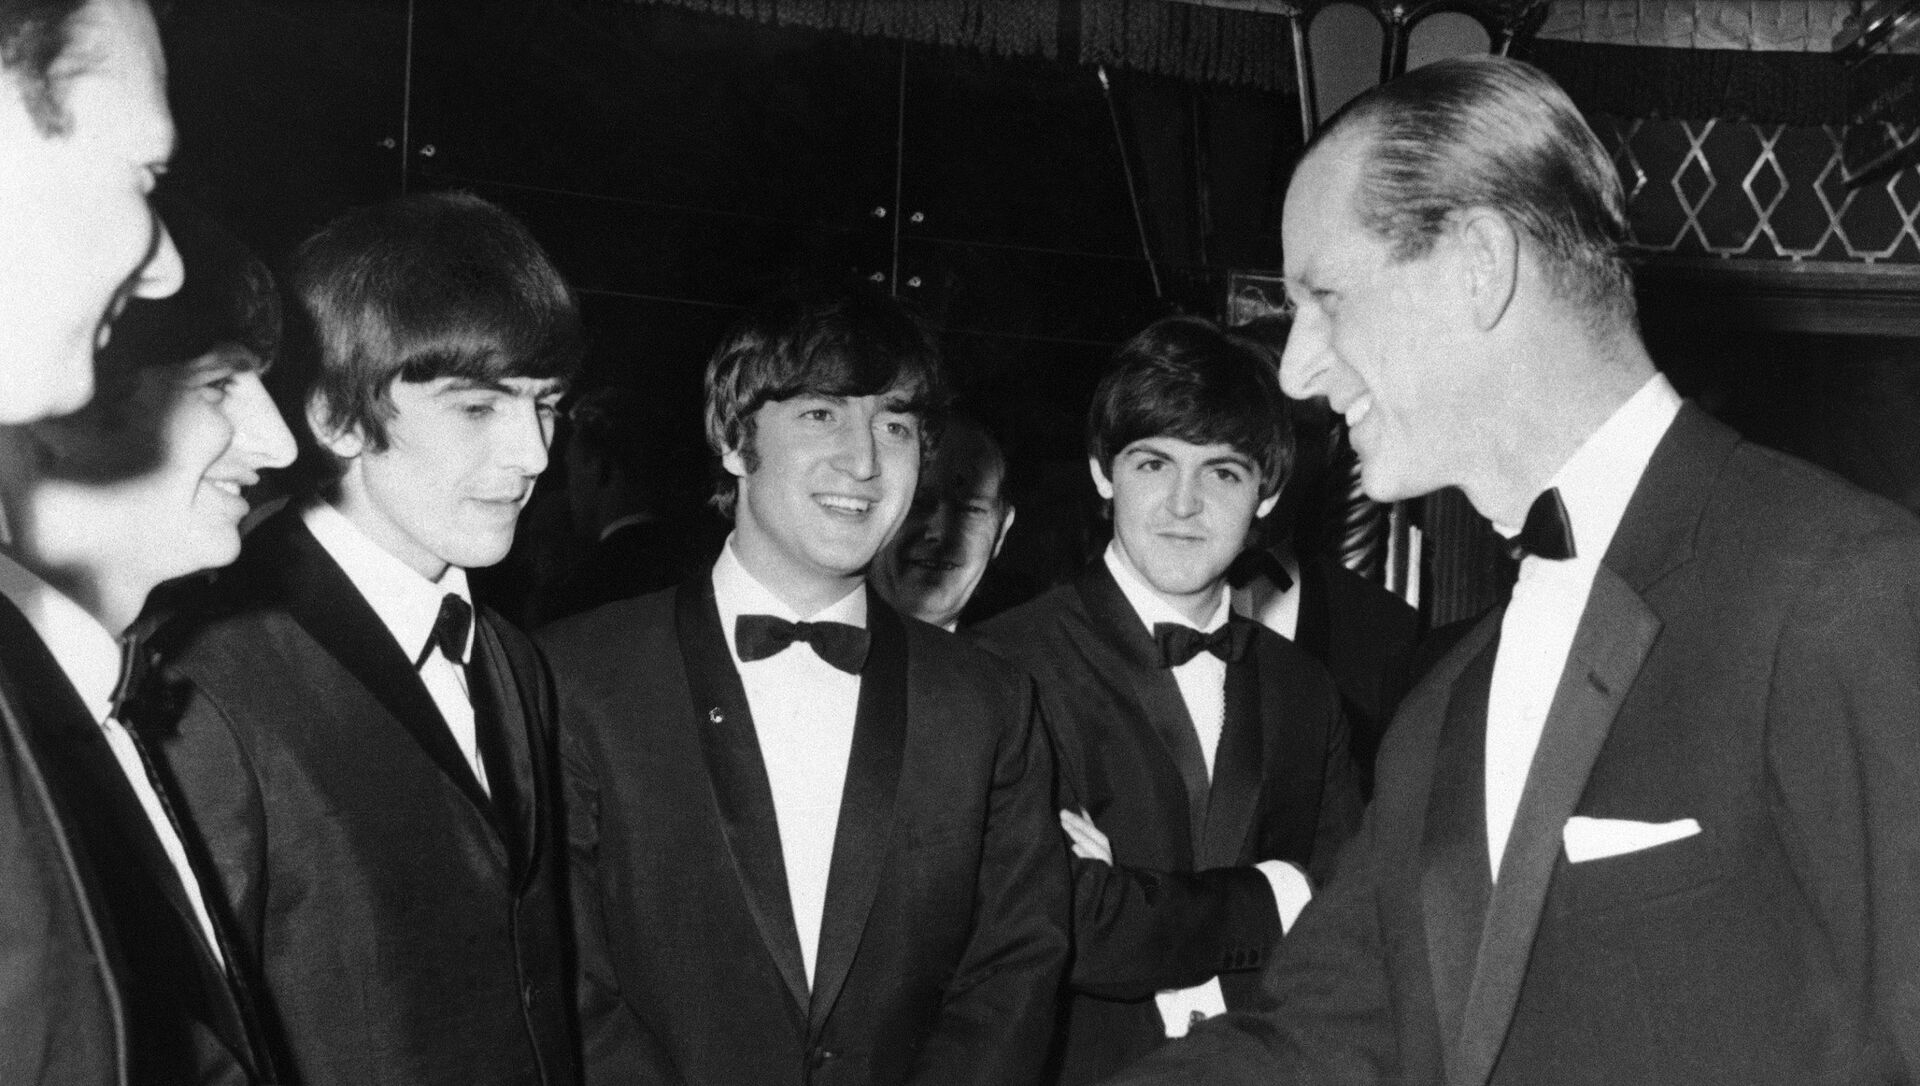 Принц Филипп на встрече с группой The Beatles в Лондоне, 1964 год - Sputnik Армения, 1920, 20.06.2021